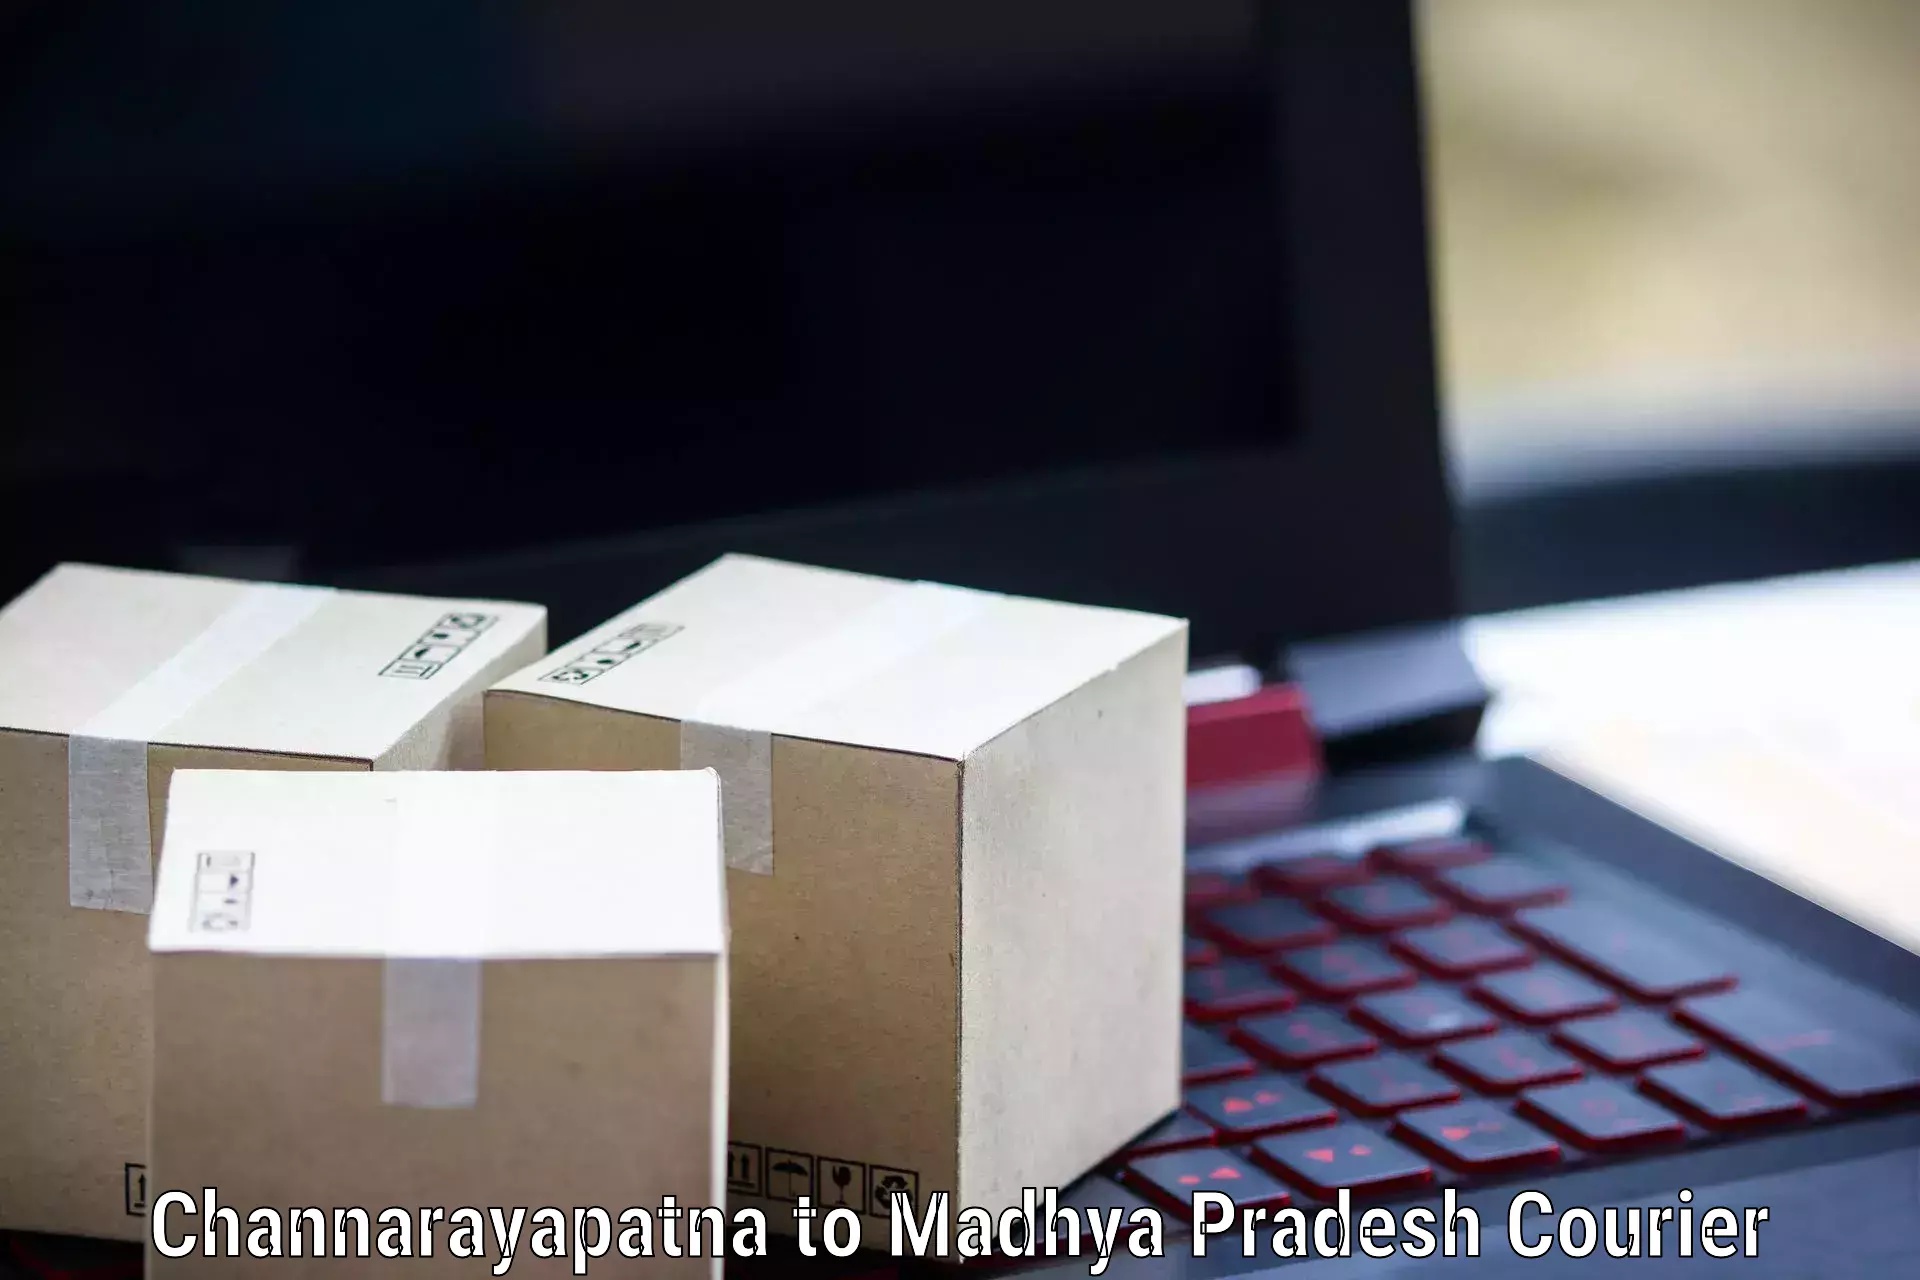 Professional delivery solutions Channarayapatna to Niwari